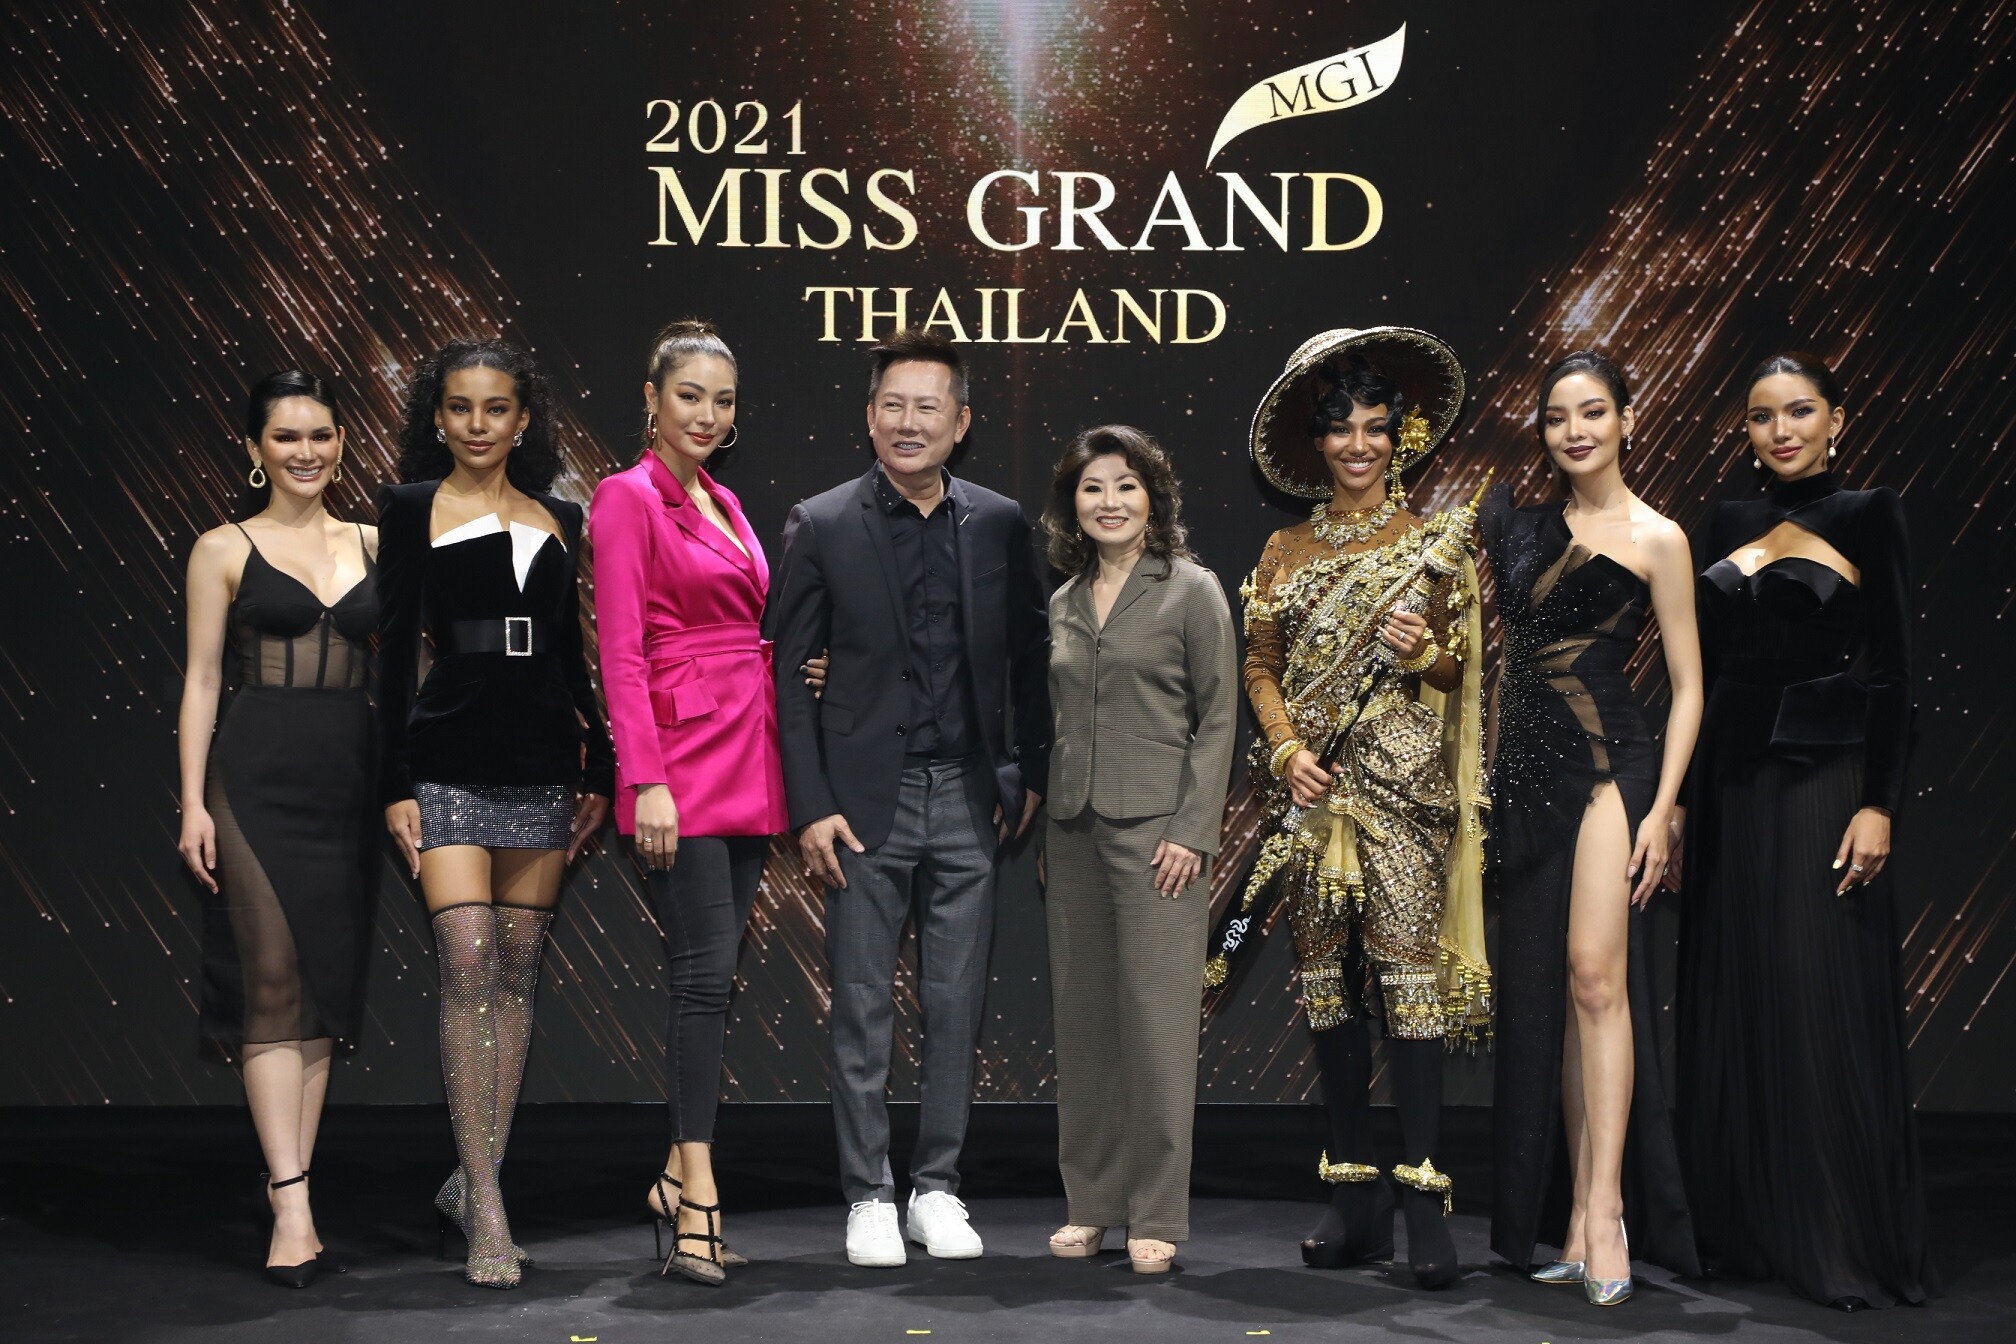 Miss Grand International 2020 : Covid 19 Episode นางงามทั่วโลก ลุ้นมง 27 มีนาคม นี้ที่ ประเทศไทย